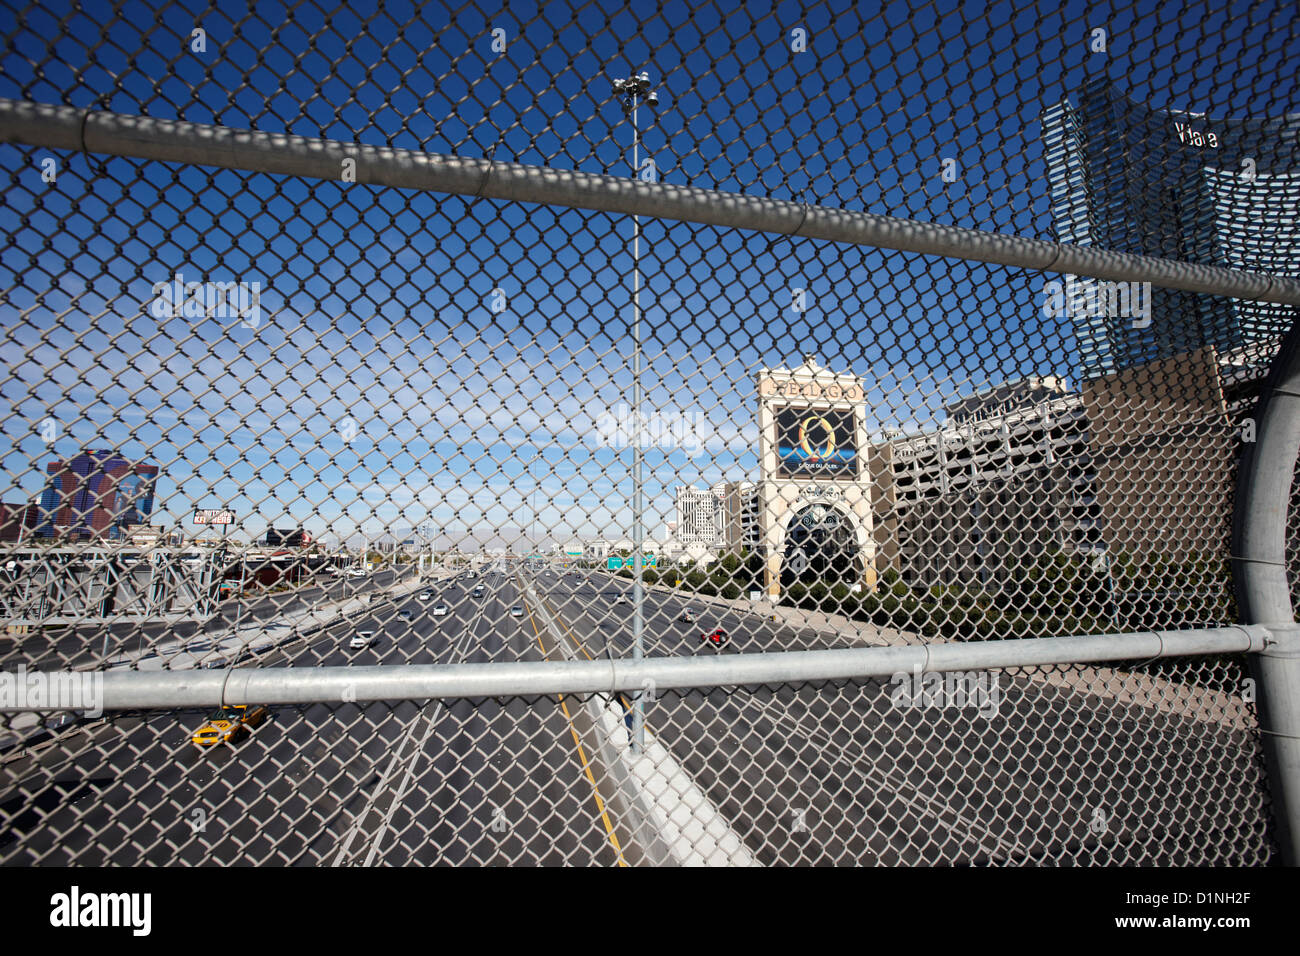 Catena di sicurezza collegamento recinto schermo oltre i-15 interstate in Las Vegas Nevada USA Foto Stock